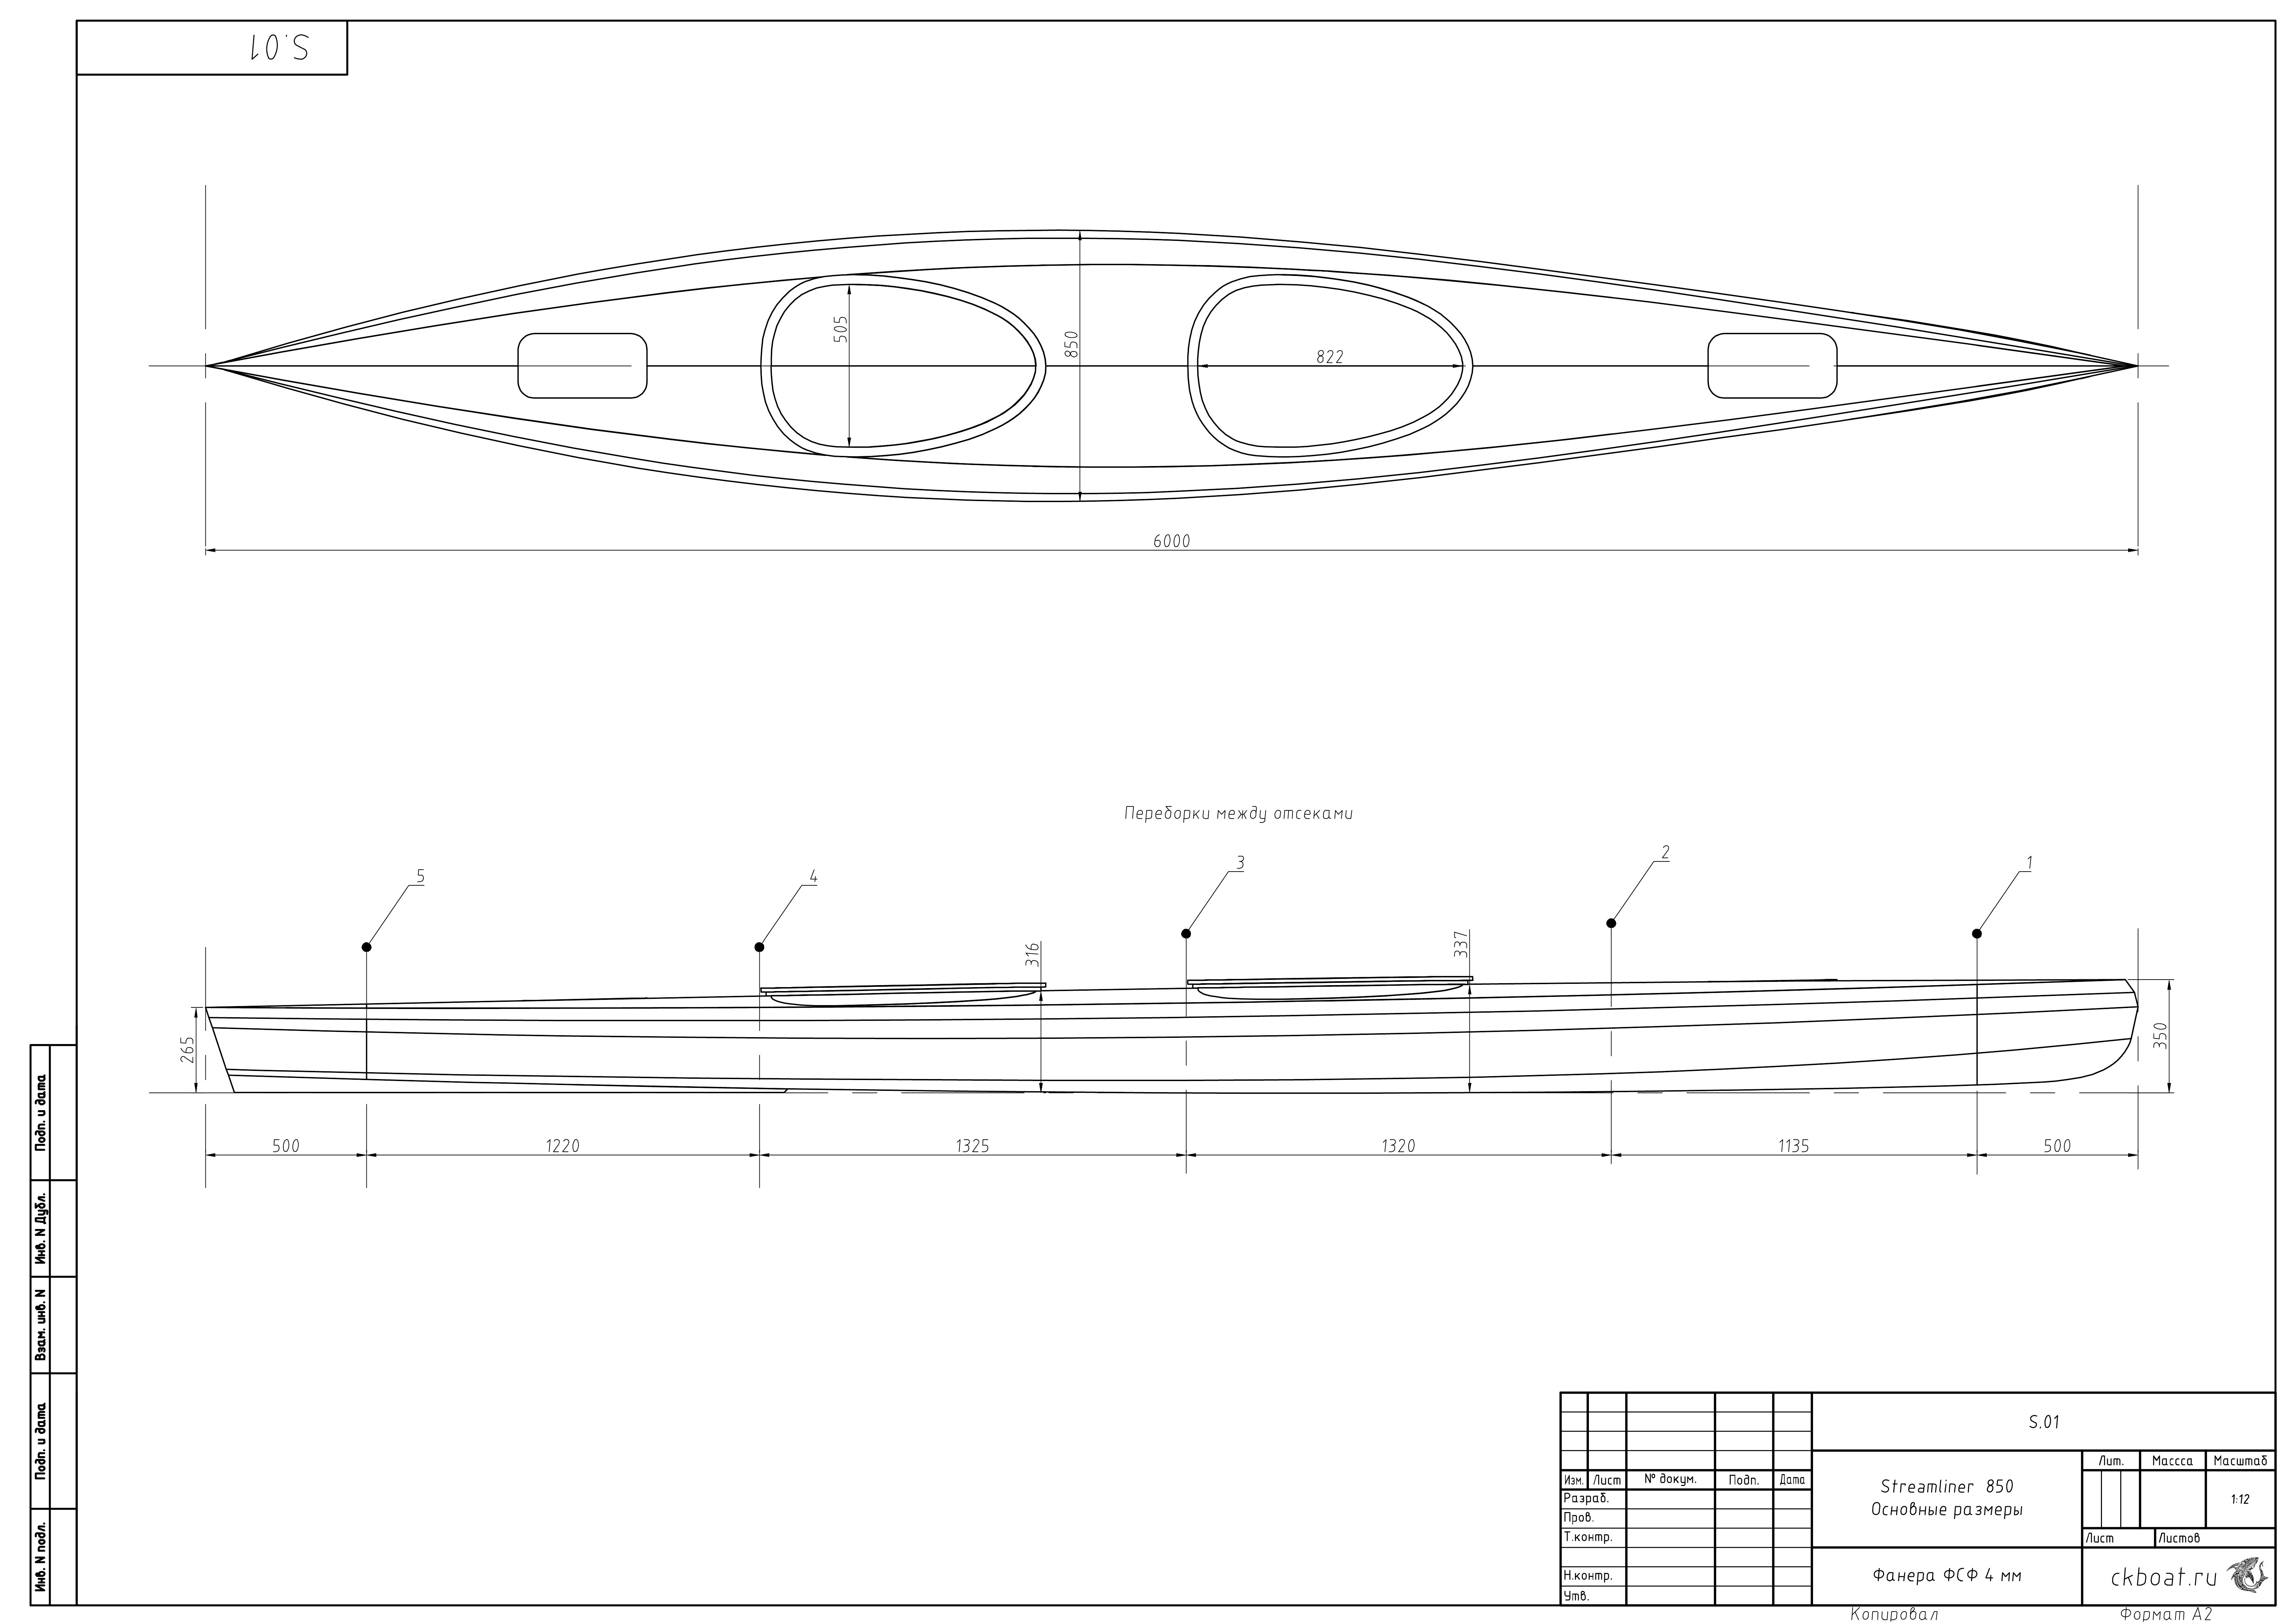 Основные размеры Streamliner 850